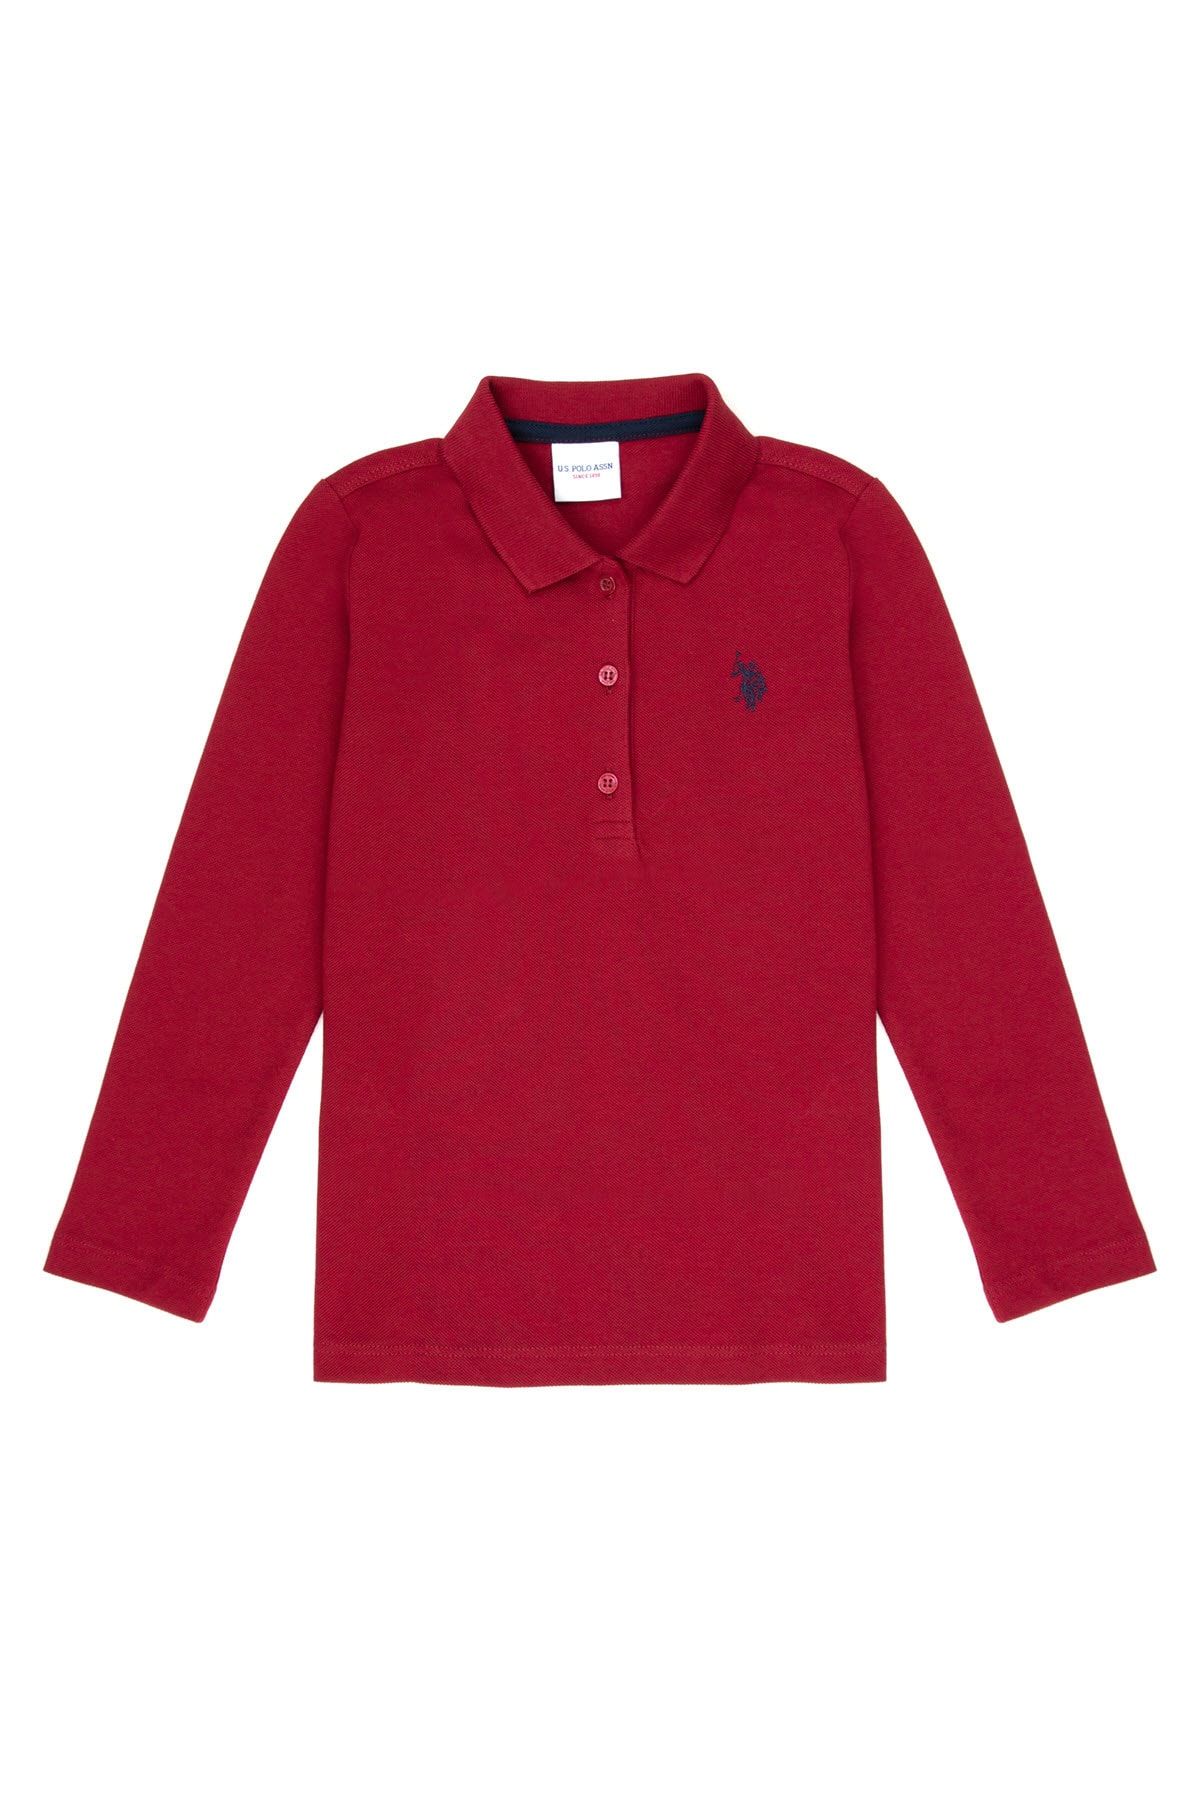 U.S. Polo Assn. Kırmızı Kız Çocuk Sweatshirt